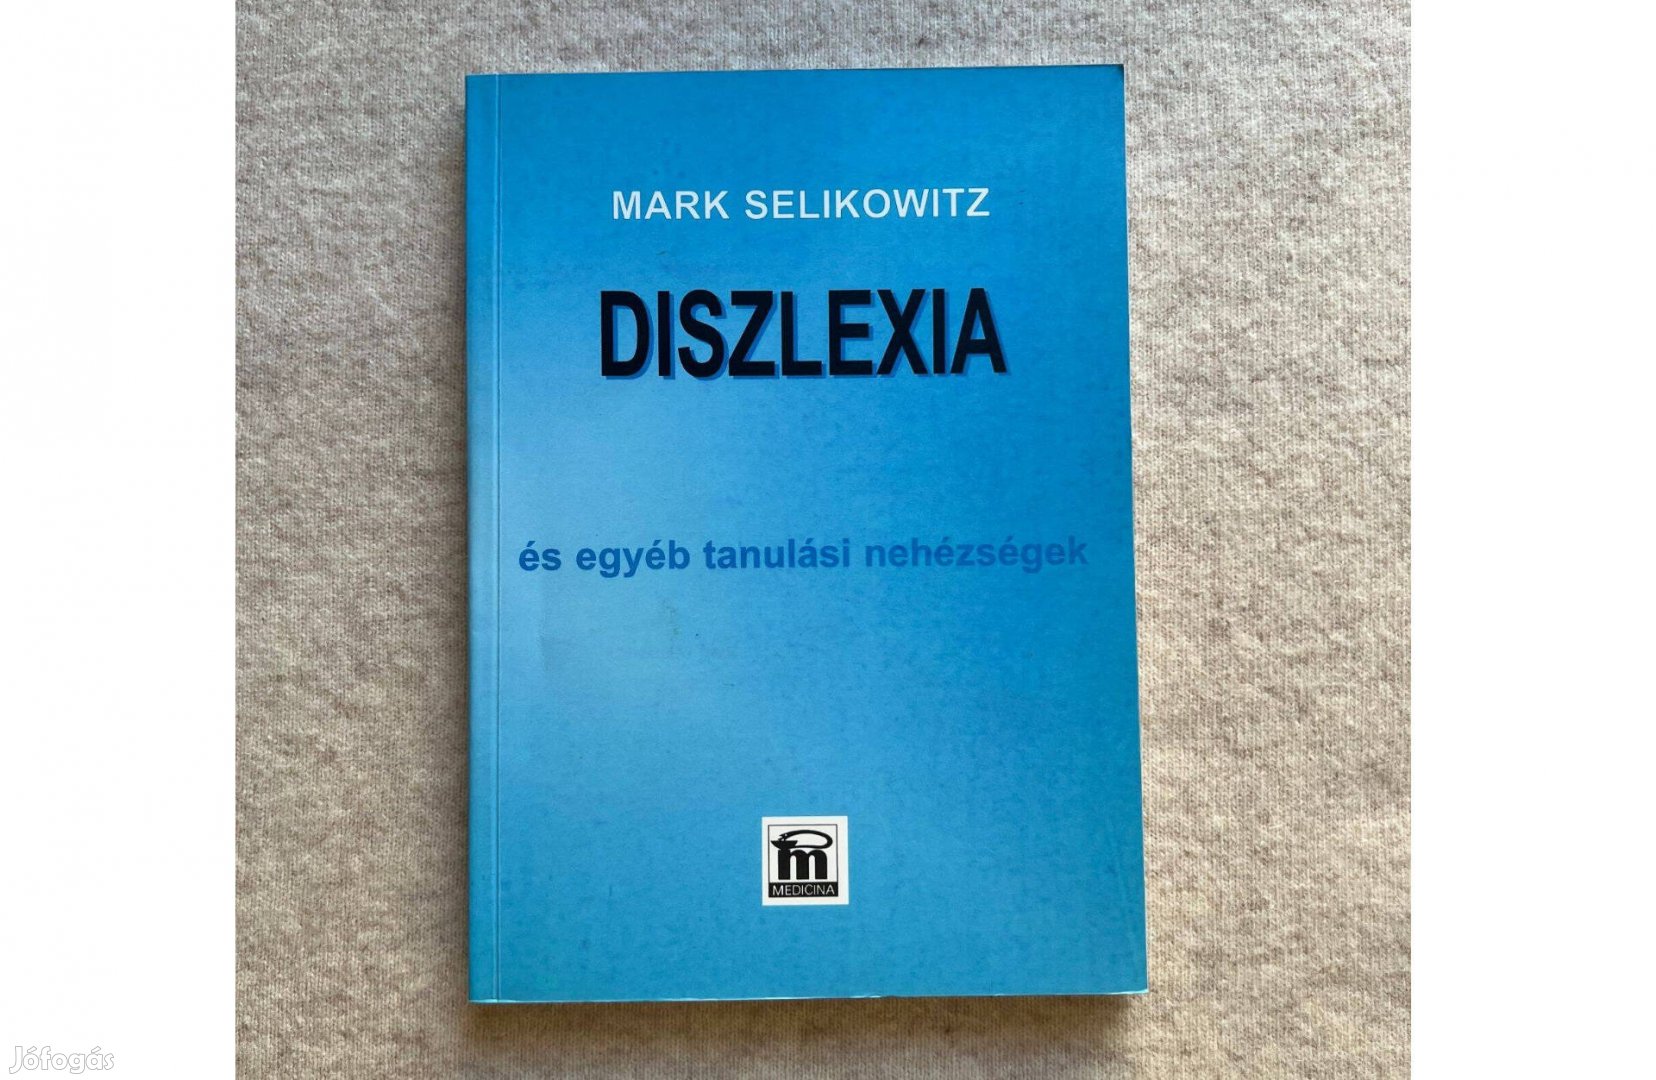 Mark Selikowitz: Diszlexia és egyéb tanulási nehézségek